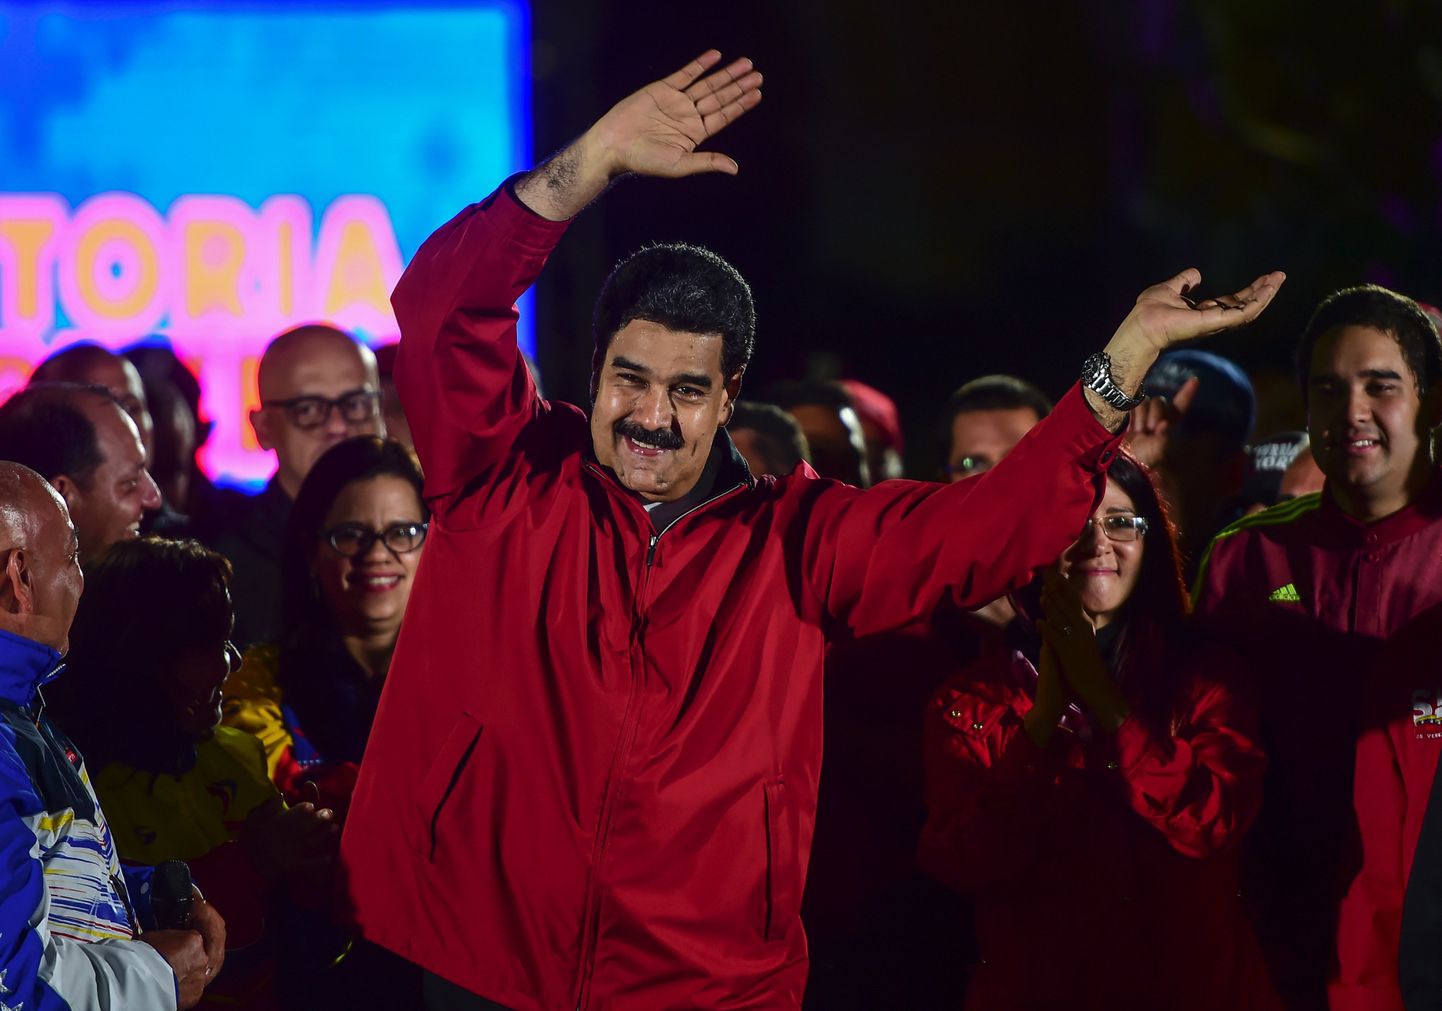 Venezuela president Nicolas Maduro võitu väja kuulutamas.